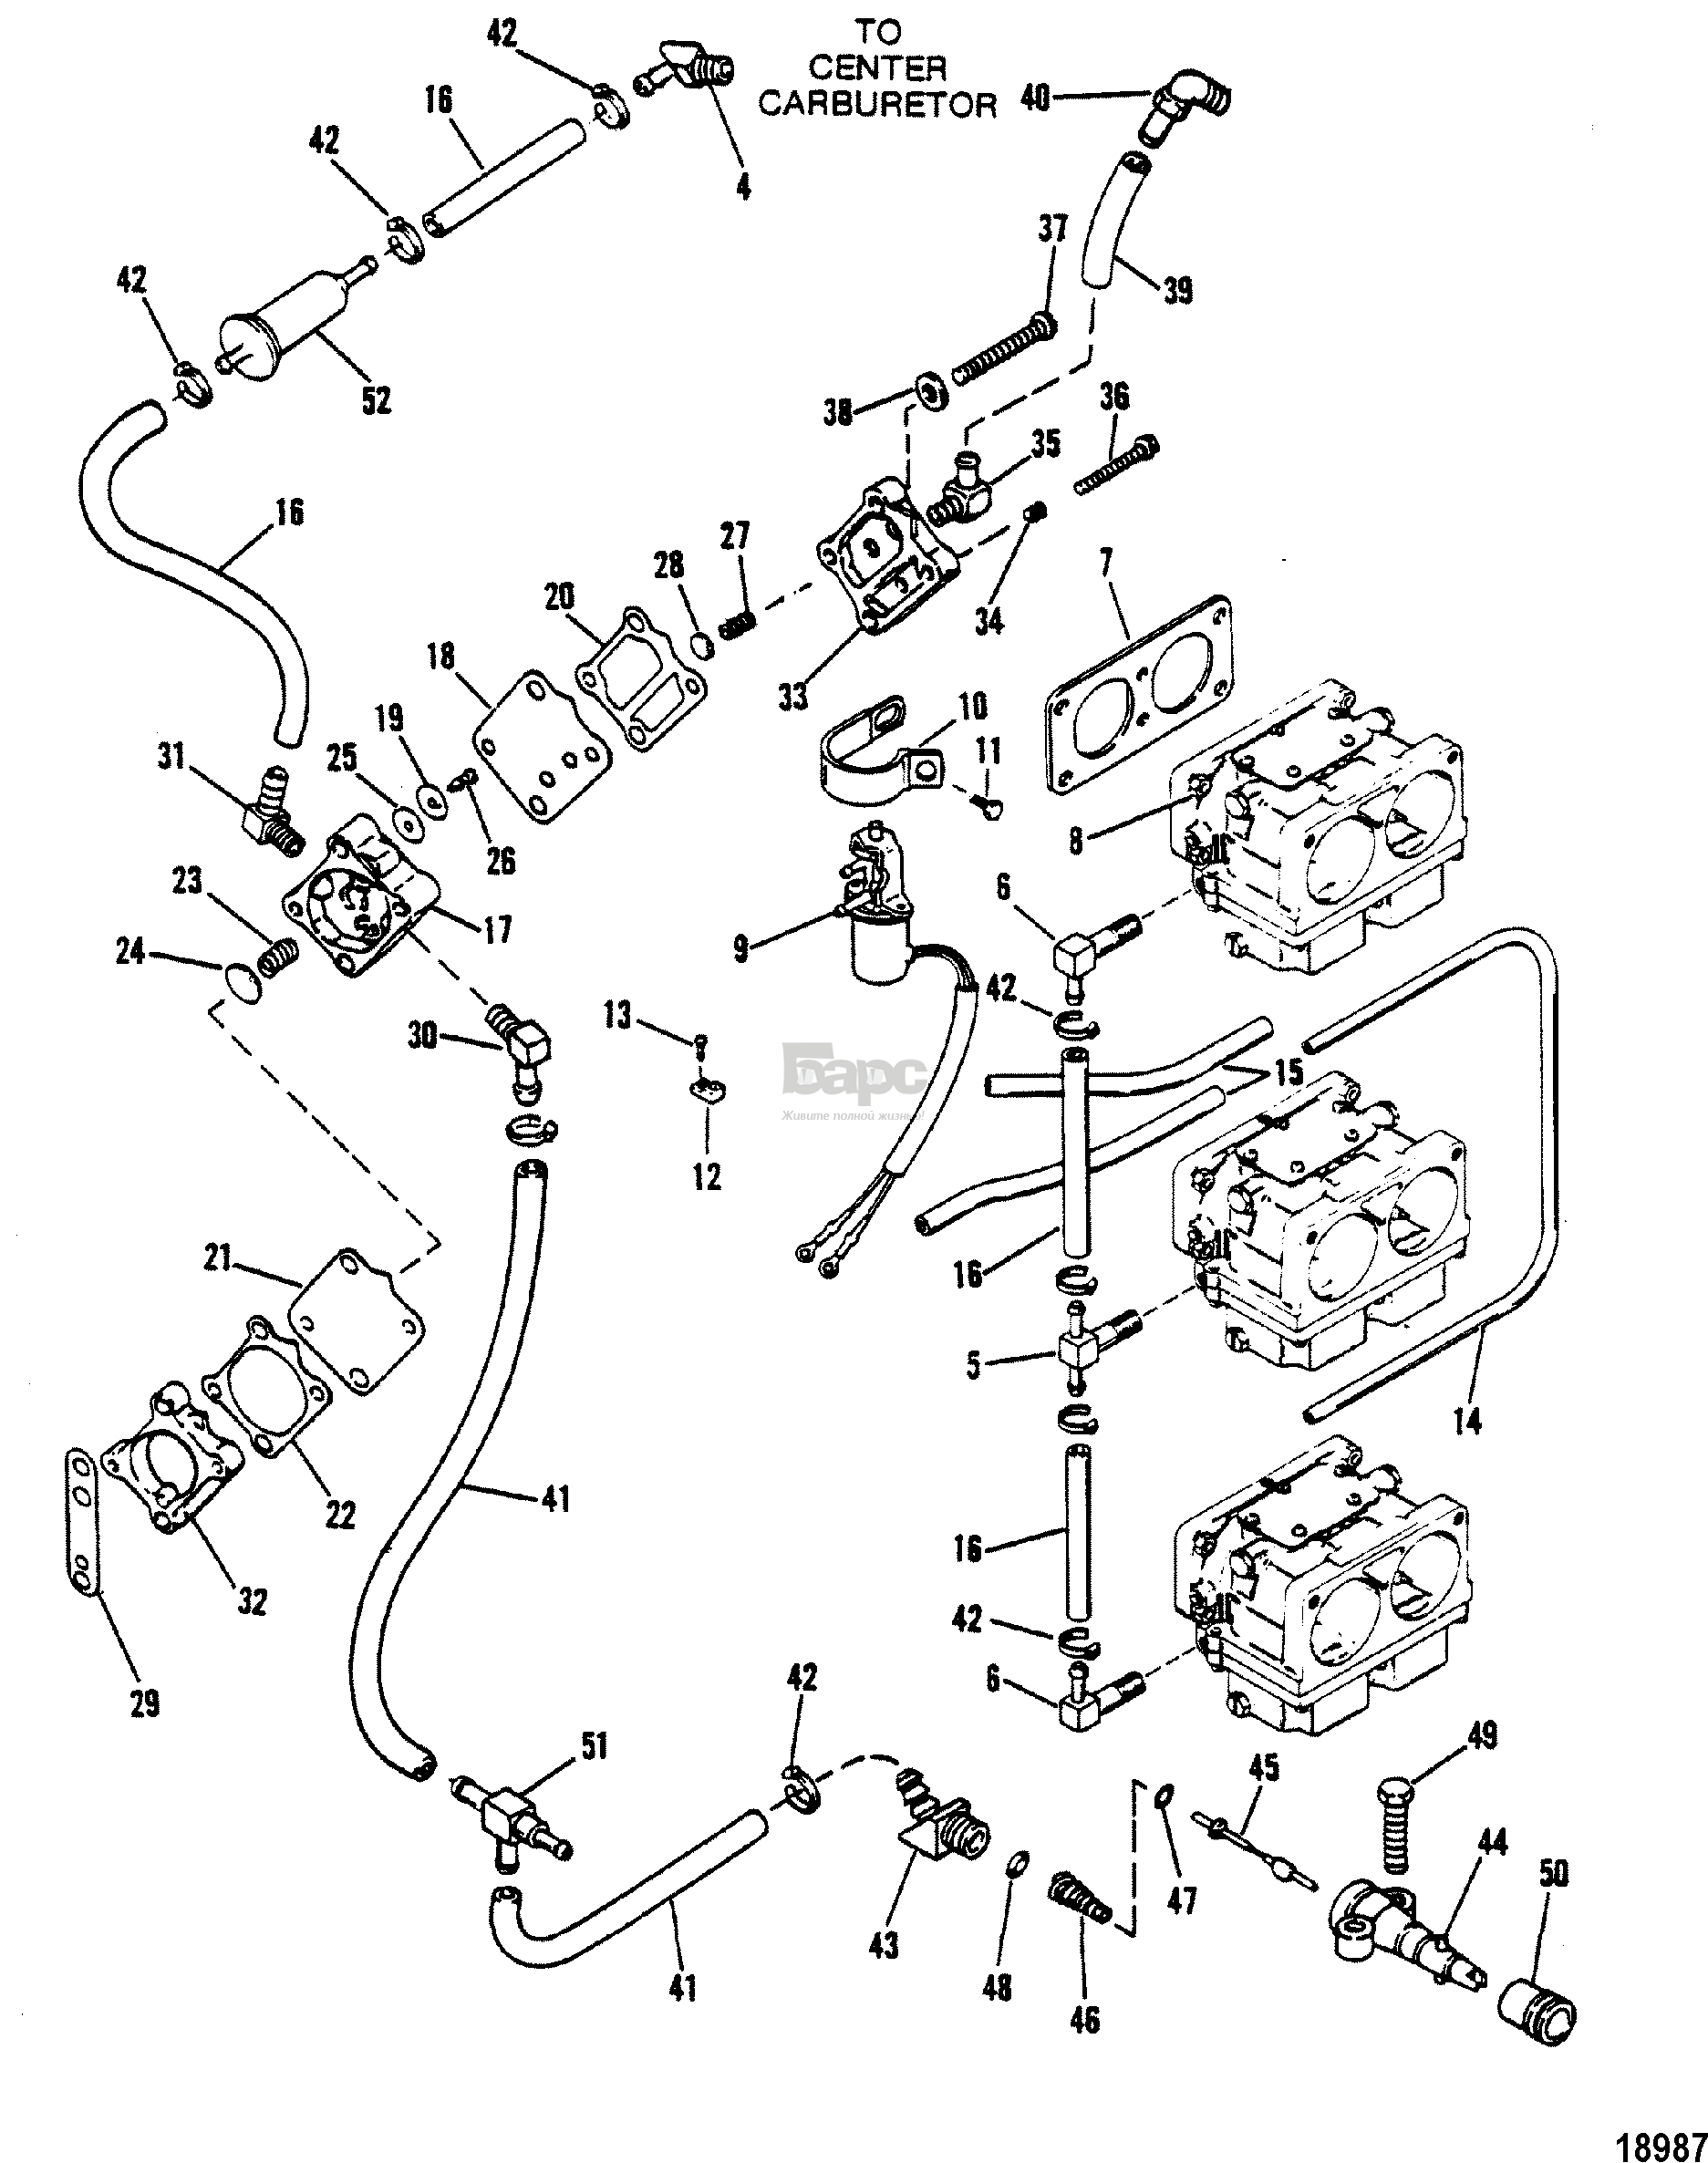 Fuel Pump(Design III) (Square Fuel Pump)